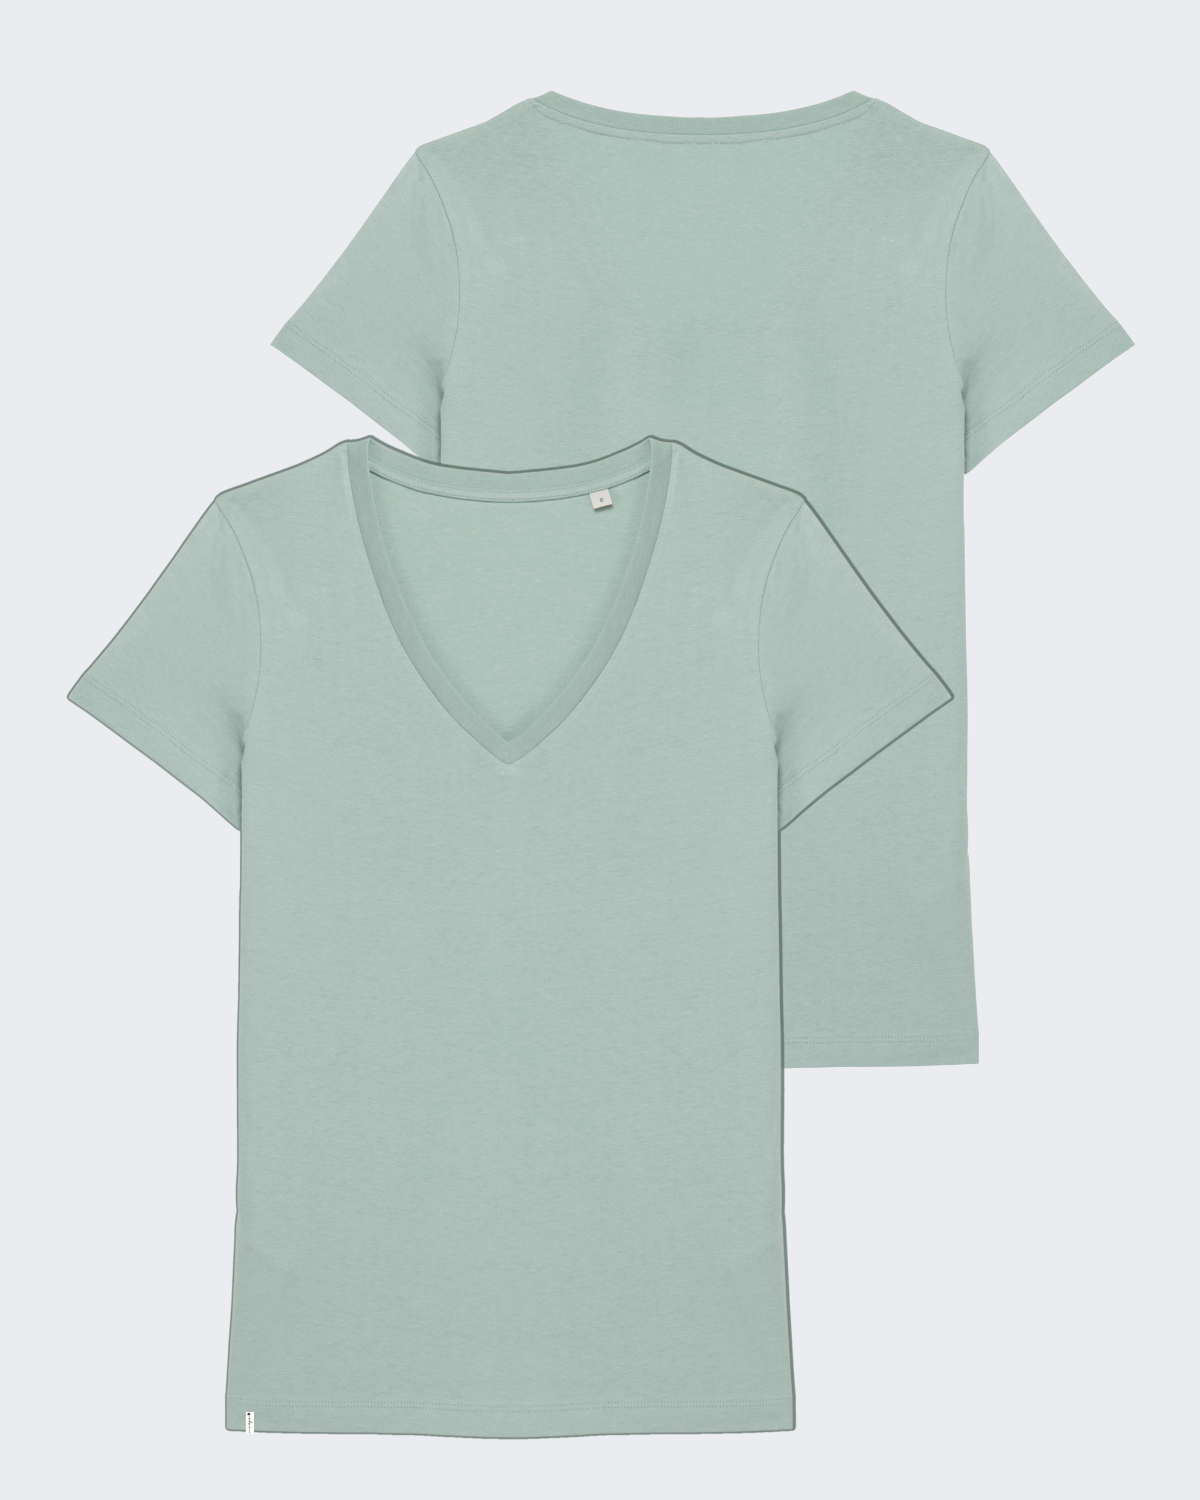 Damen-Shirt "Mint" - V-Ausschnitt